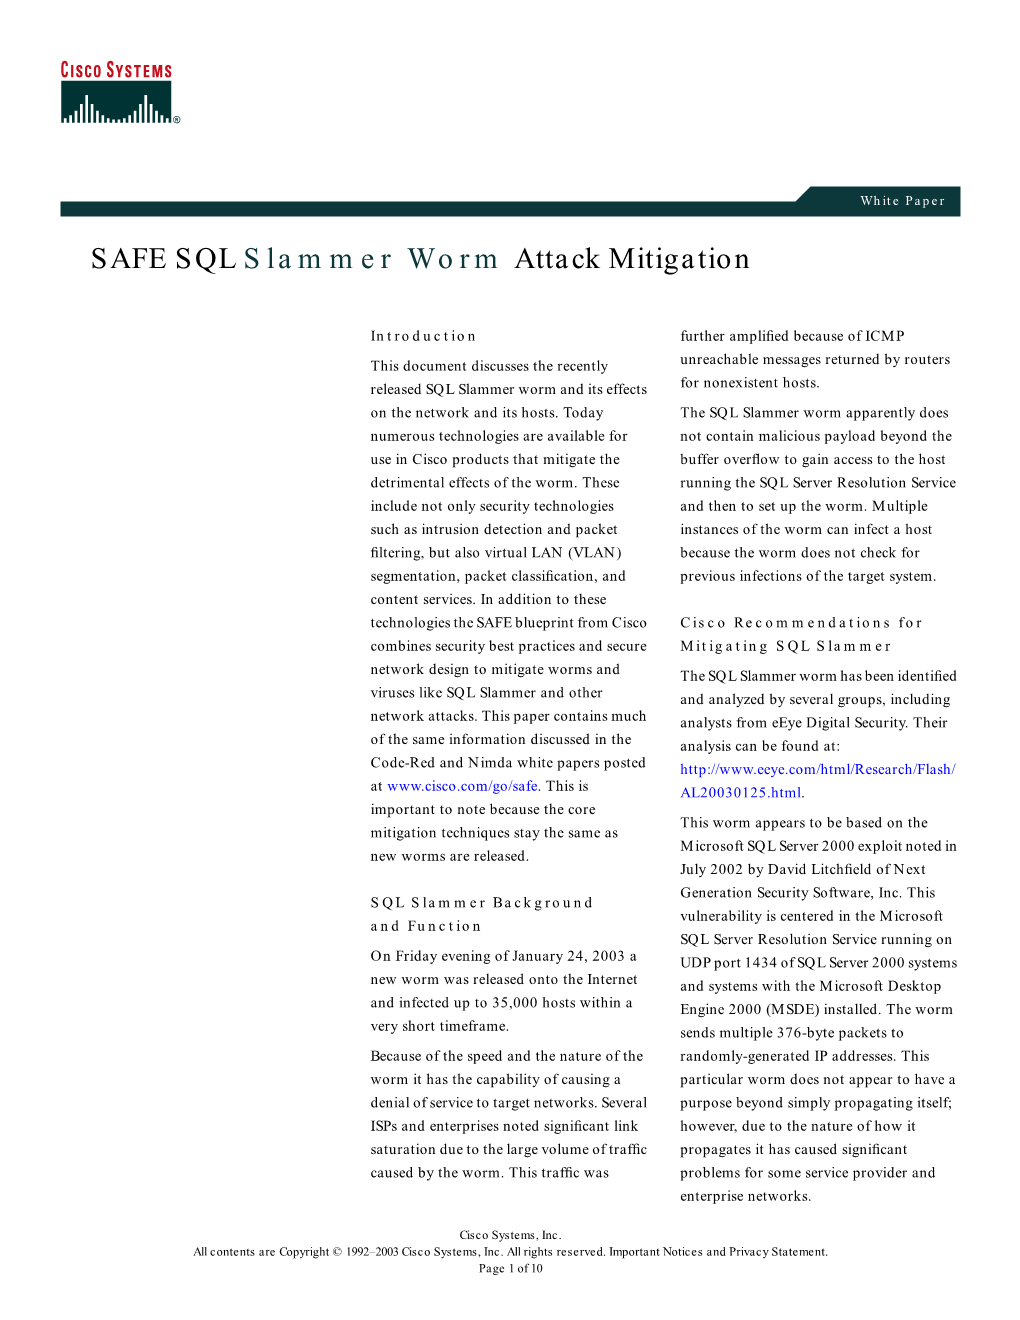 SAFE SQL Slammer Worm Attack Mitigation